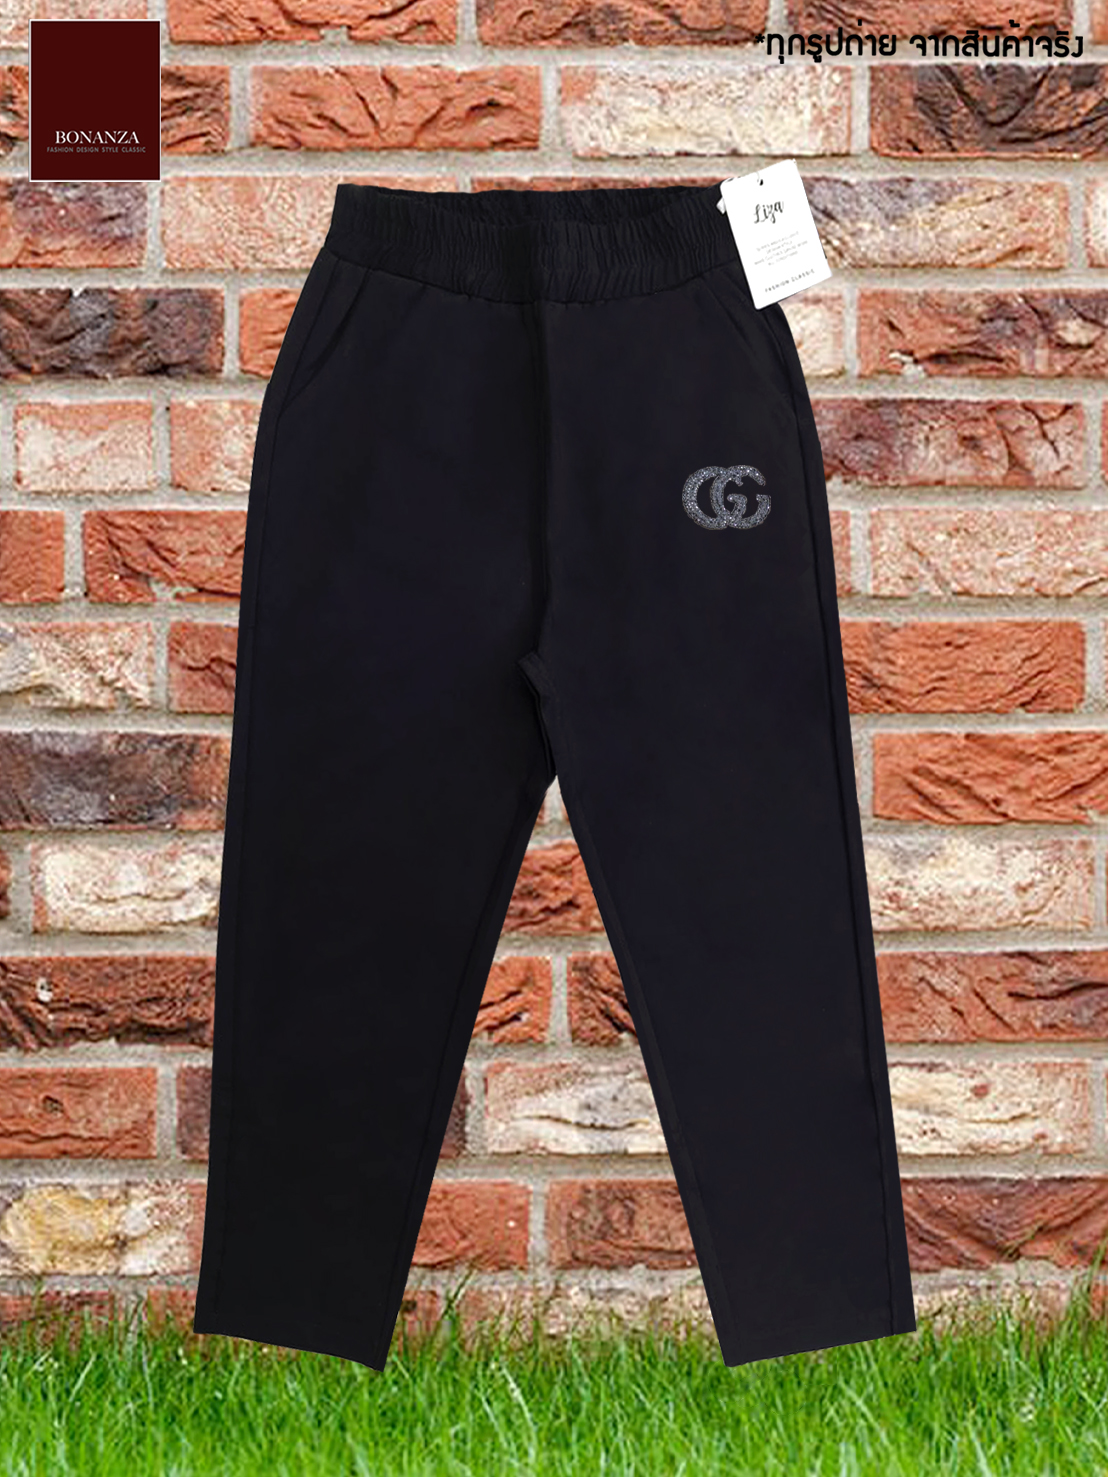 #BIG size# 5ส่วน กางเกงเลคกิ้งเนื้อเด้ง#รุ่นผ้าหนา#มีน้ำหนักอย่างดี# 2 สี : ดำและกาแฟ